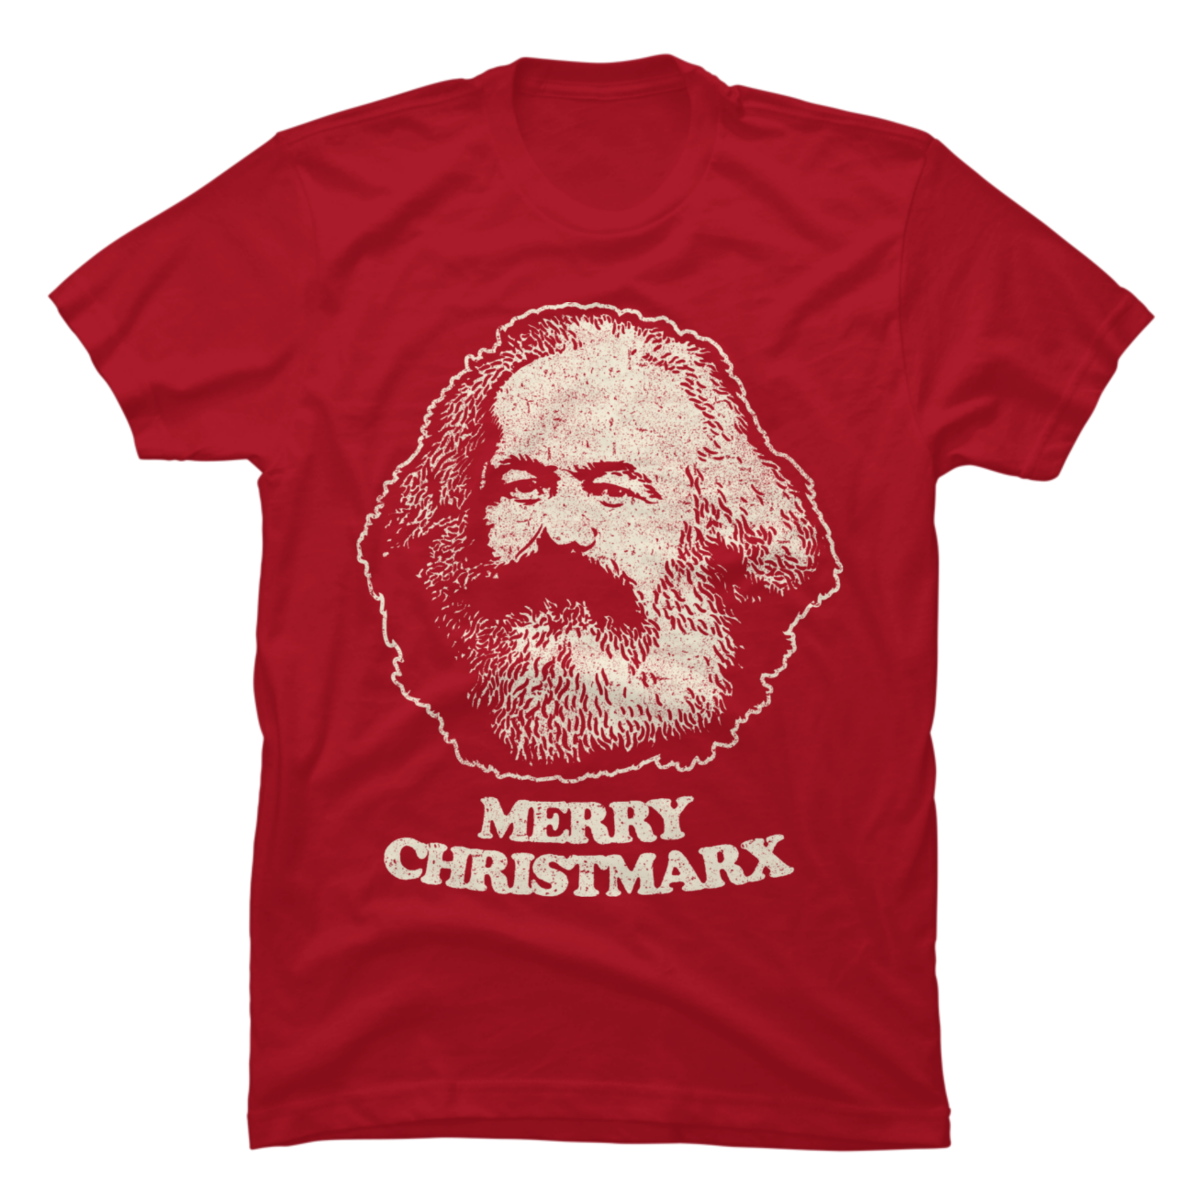 communist shirts